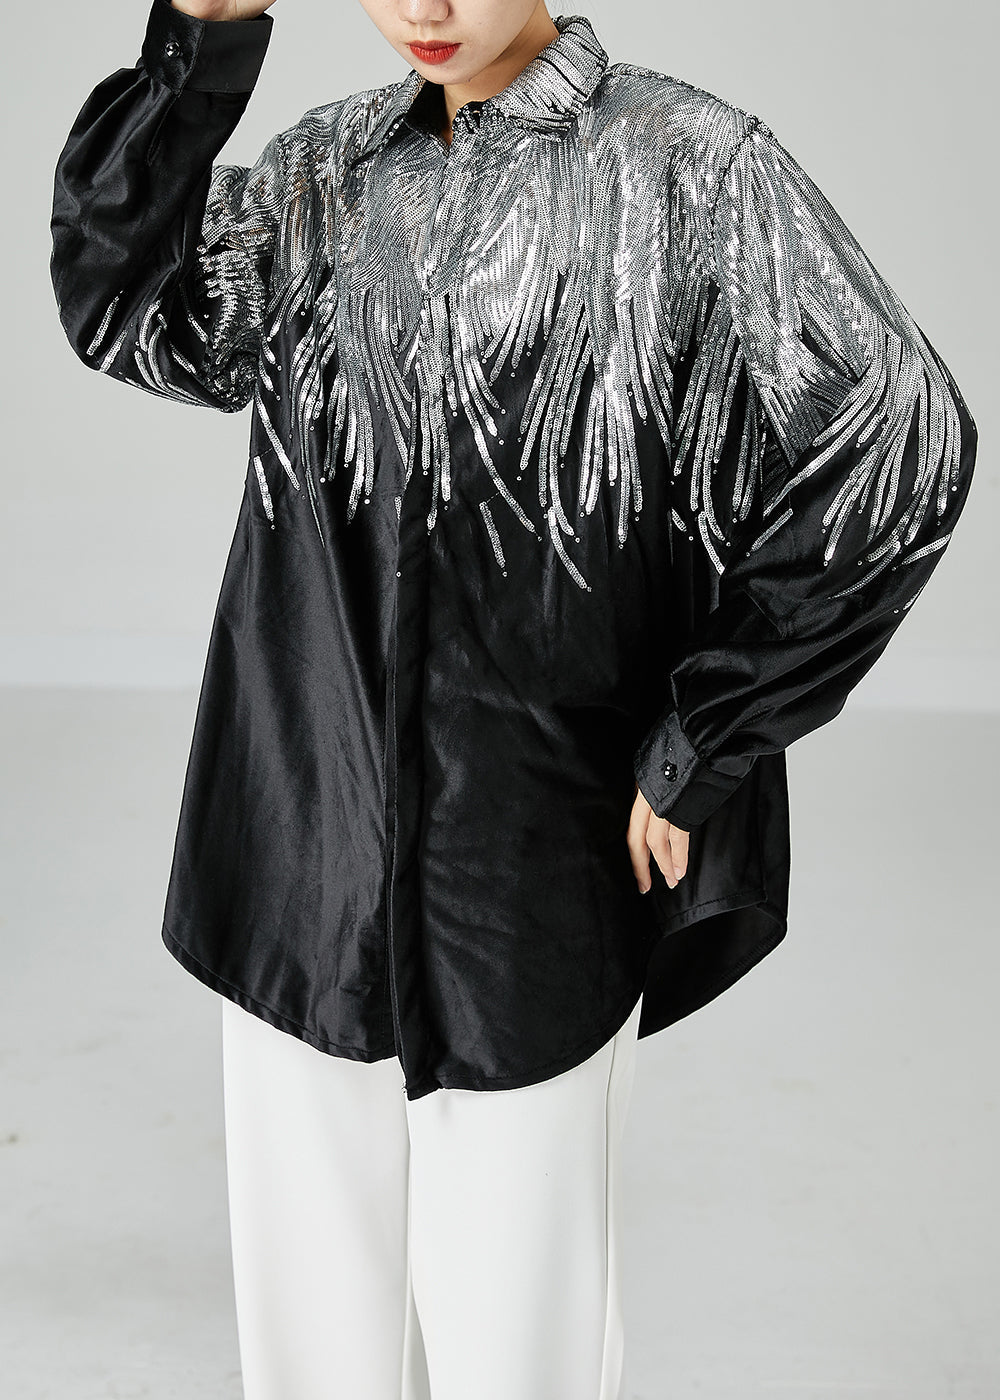 Stylish Black Oversized Sequins Spandex Coats Spring LY2478 - fabuloryshop